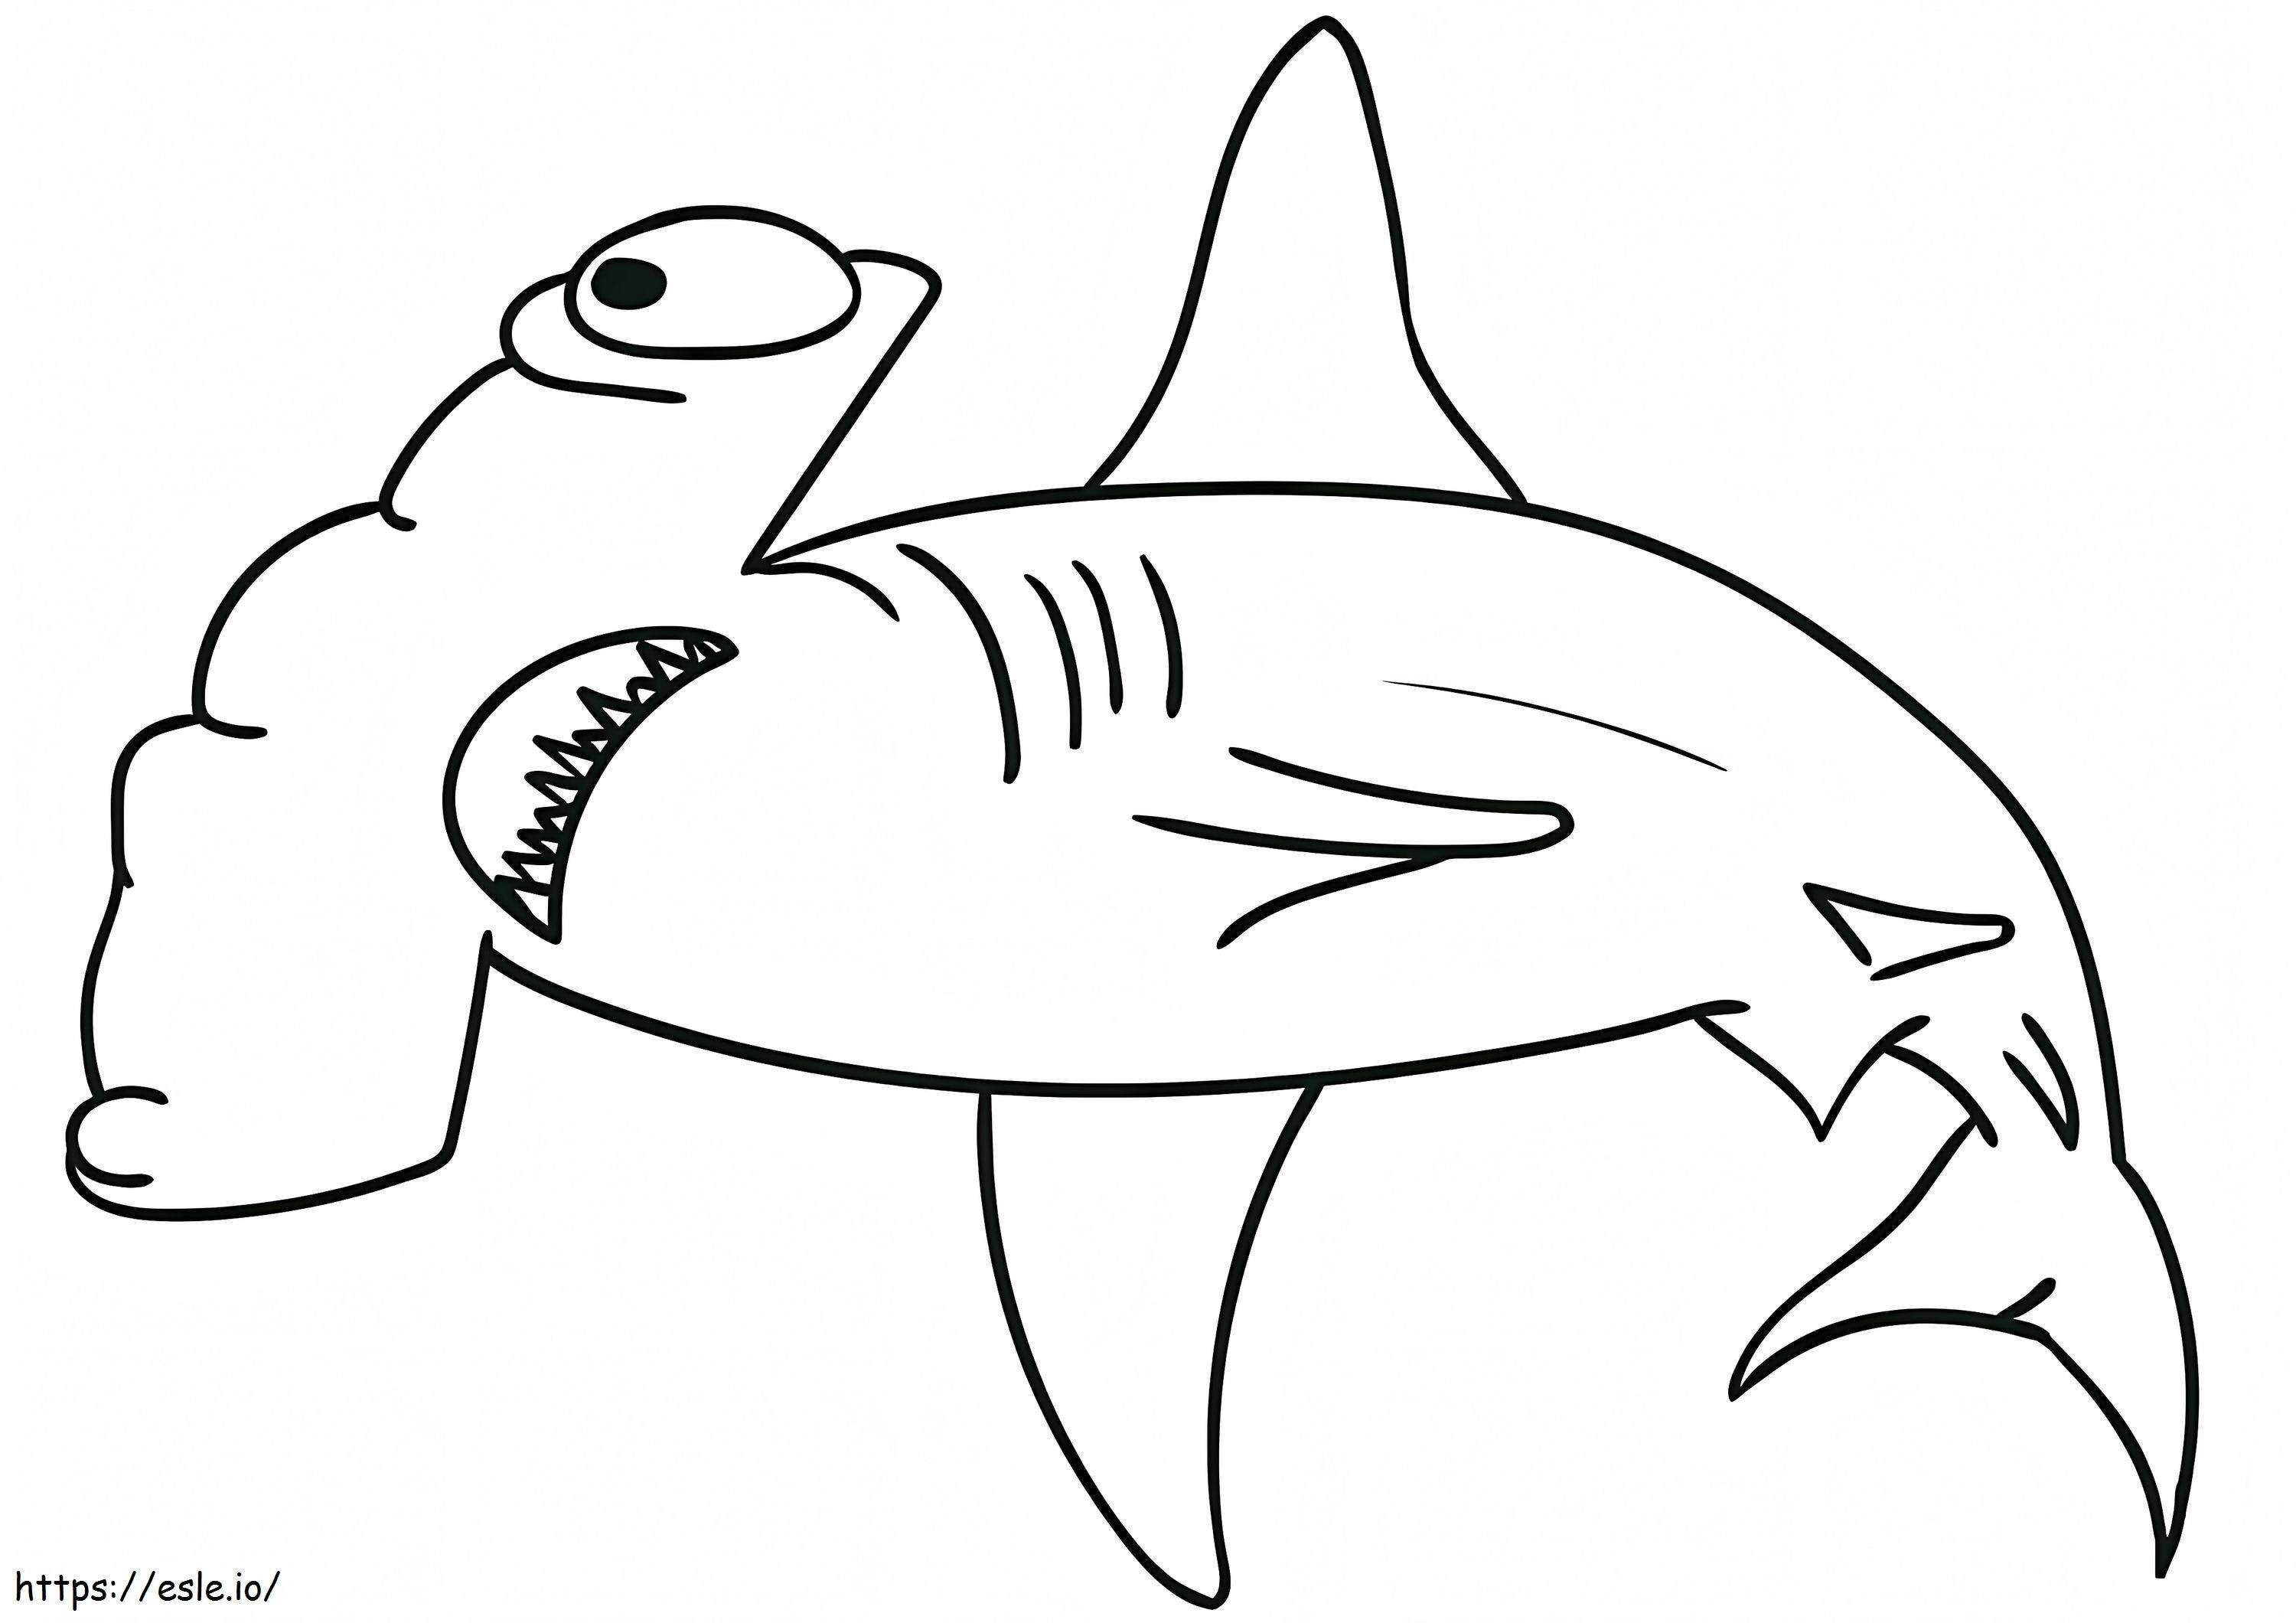 Coloriage Requin marteau gratuit à imprimer dessin